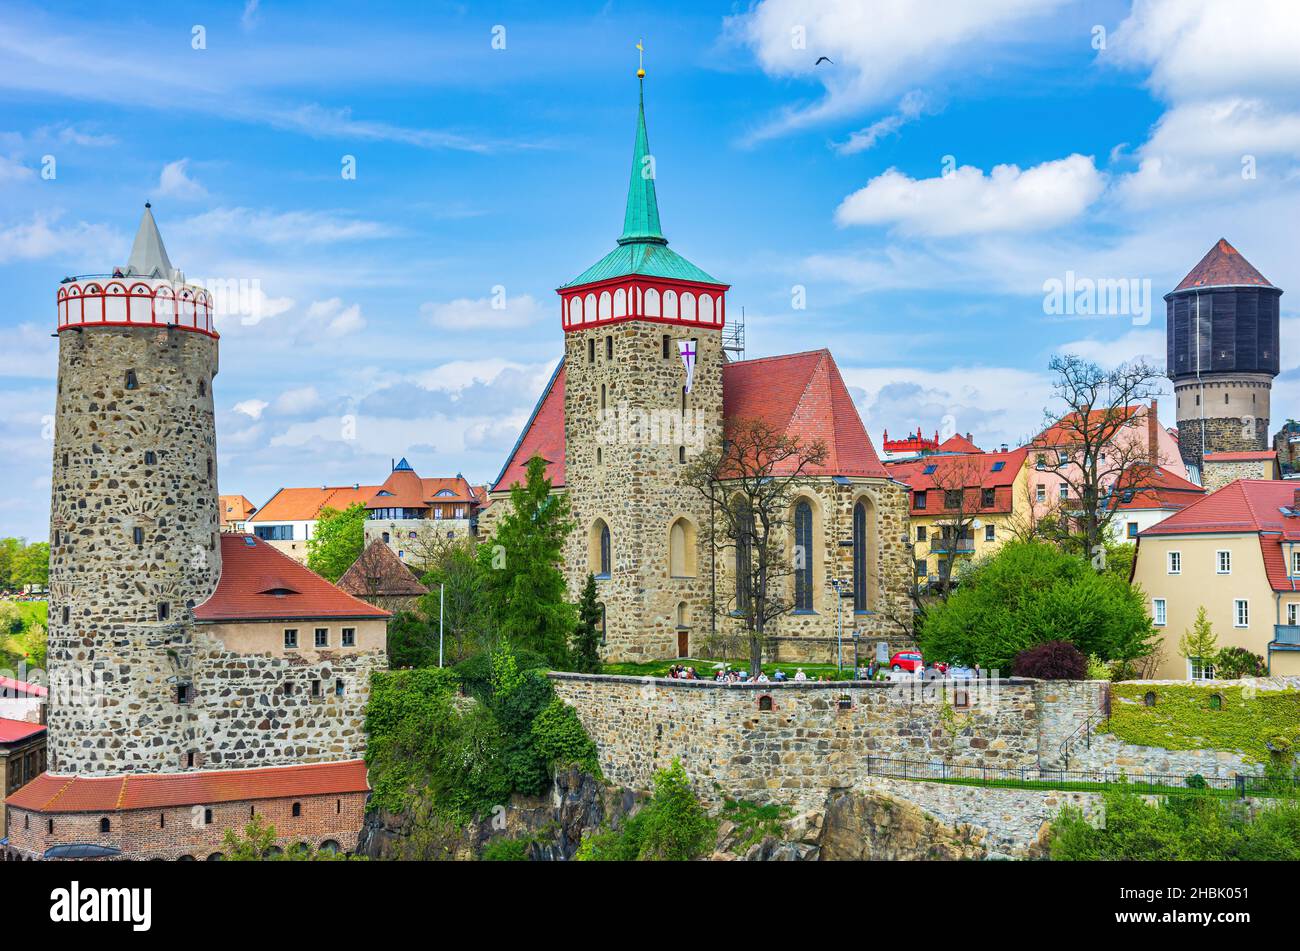 Bautzen, Oberlausitz, Sachsen, Deutschland: Die bekannte Silhouette der mittelalterlichen Altstadt mit den charakteristischen Gebäuden. Stockfoto